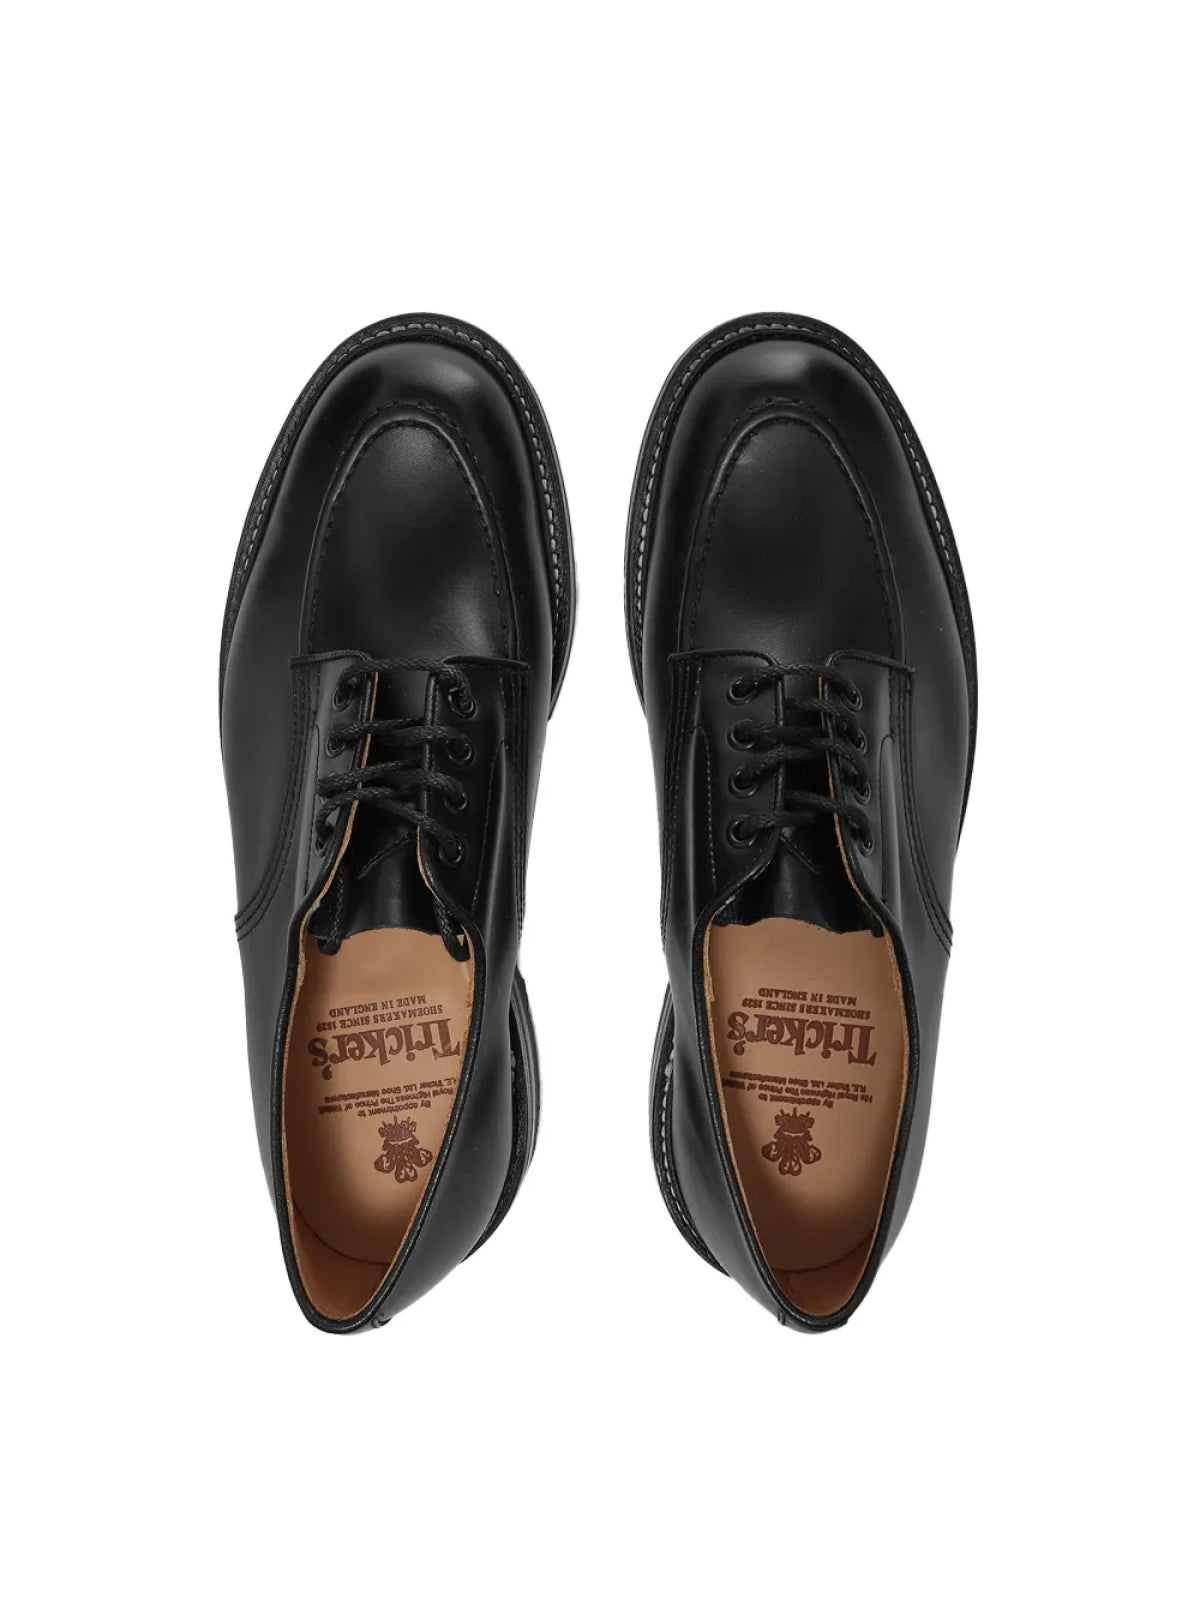 Tricker's-OUTLET-SALE-Heath Lace-up Derby Shoes-ARCHIVIST